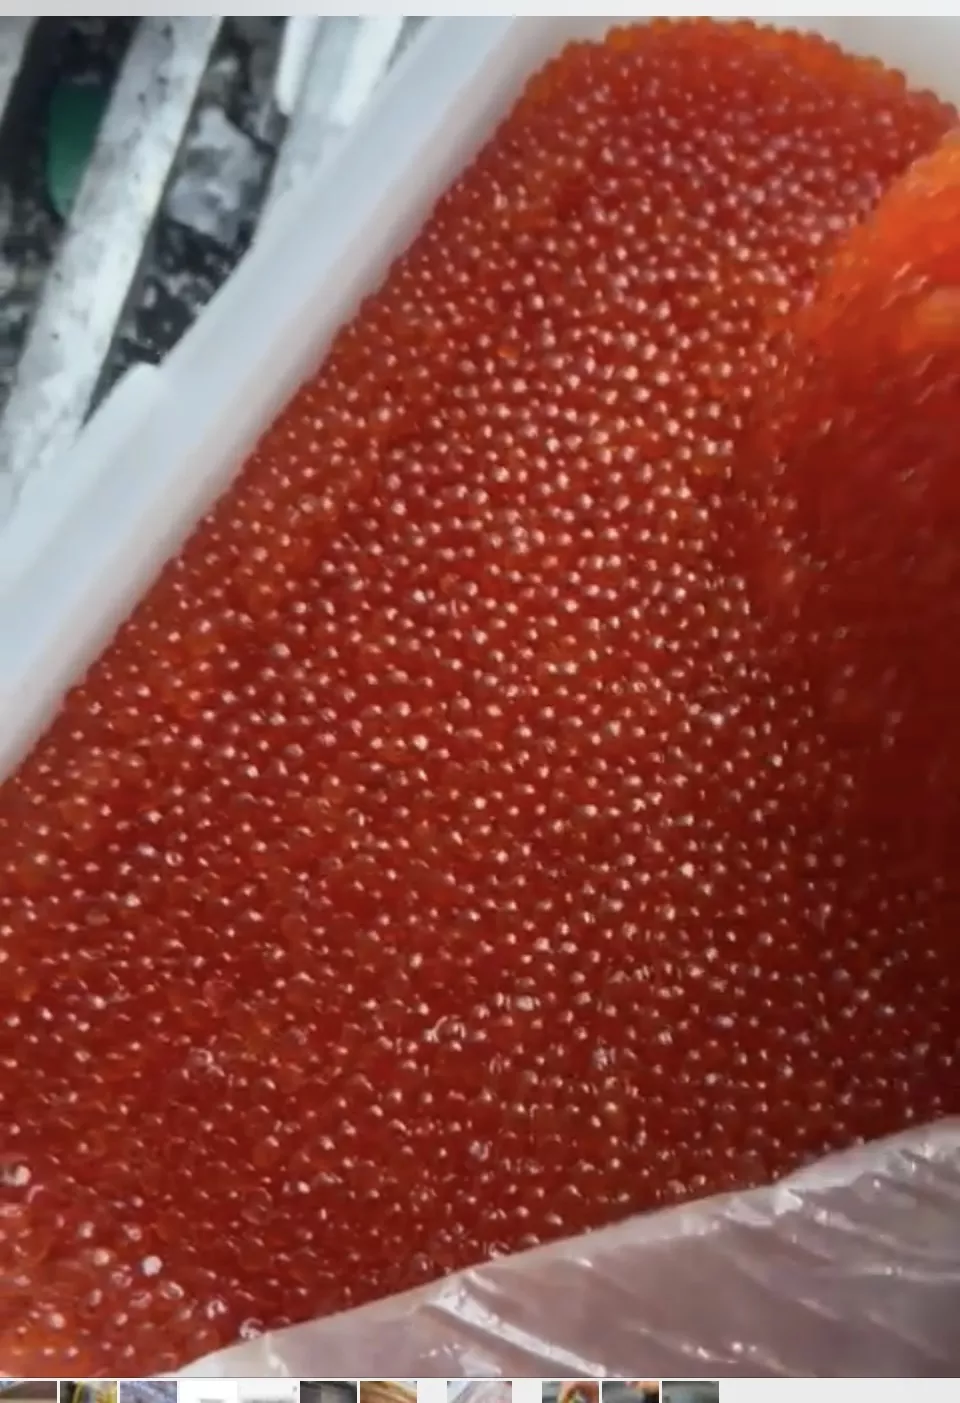 фотография продукта Икра лососевая соленая (горбуша)